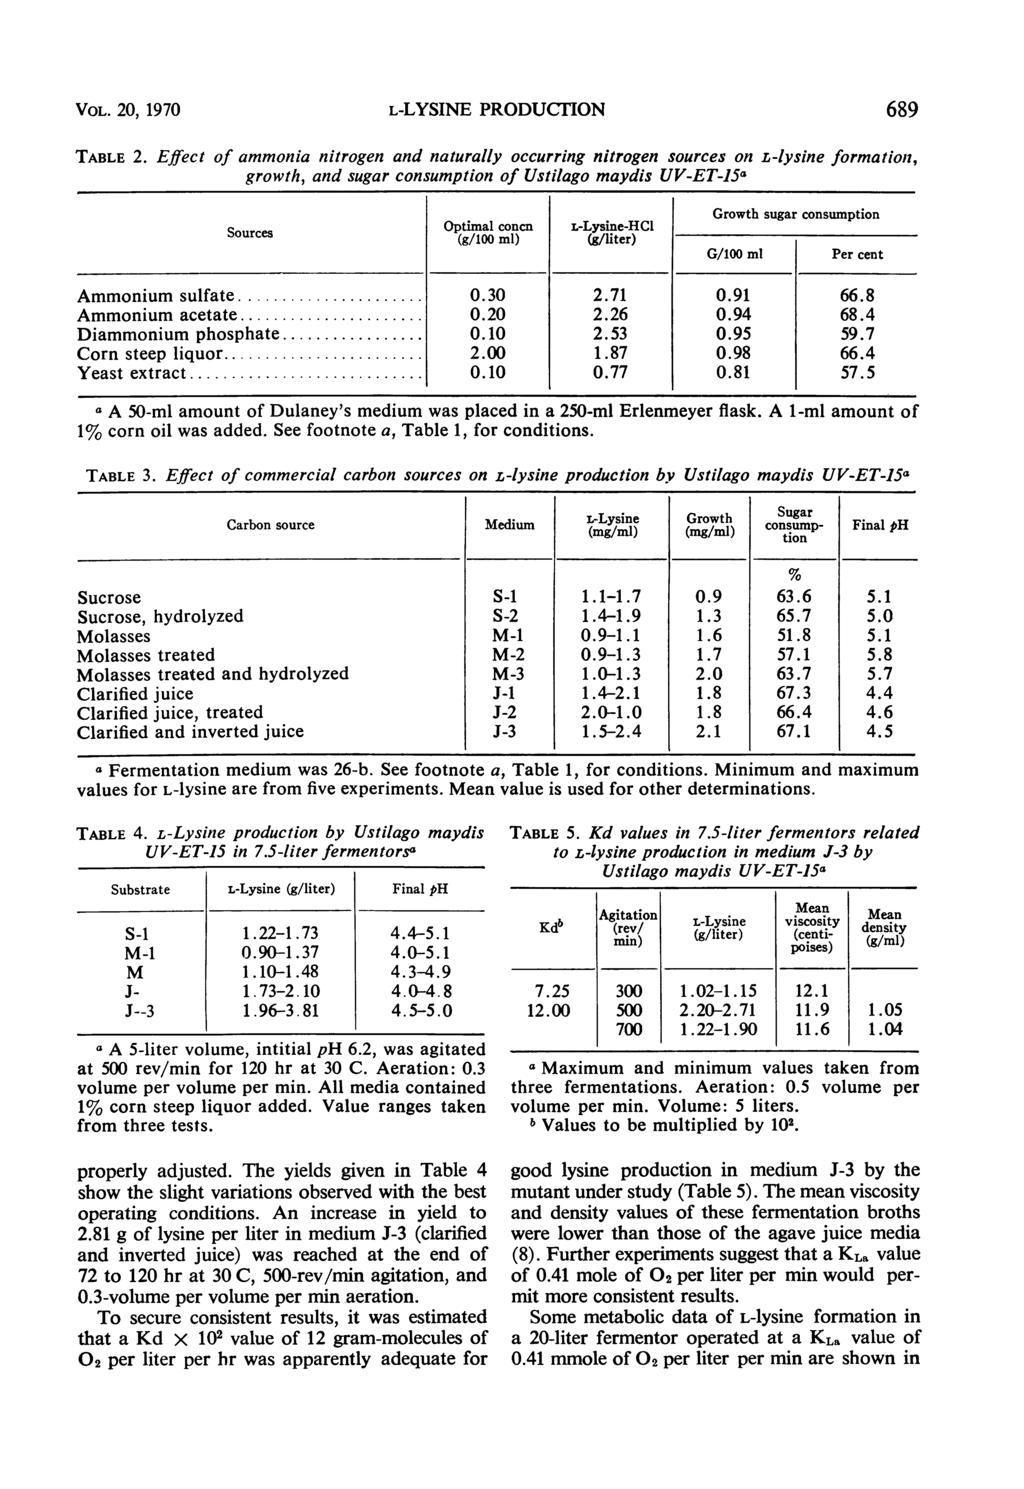 VOL. 20, 1970 L-LYSINE PRODUCrION TABLE 2.